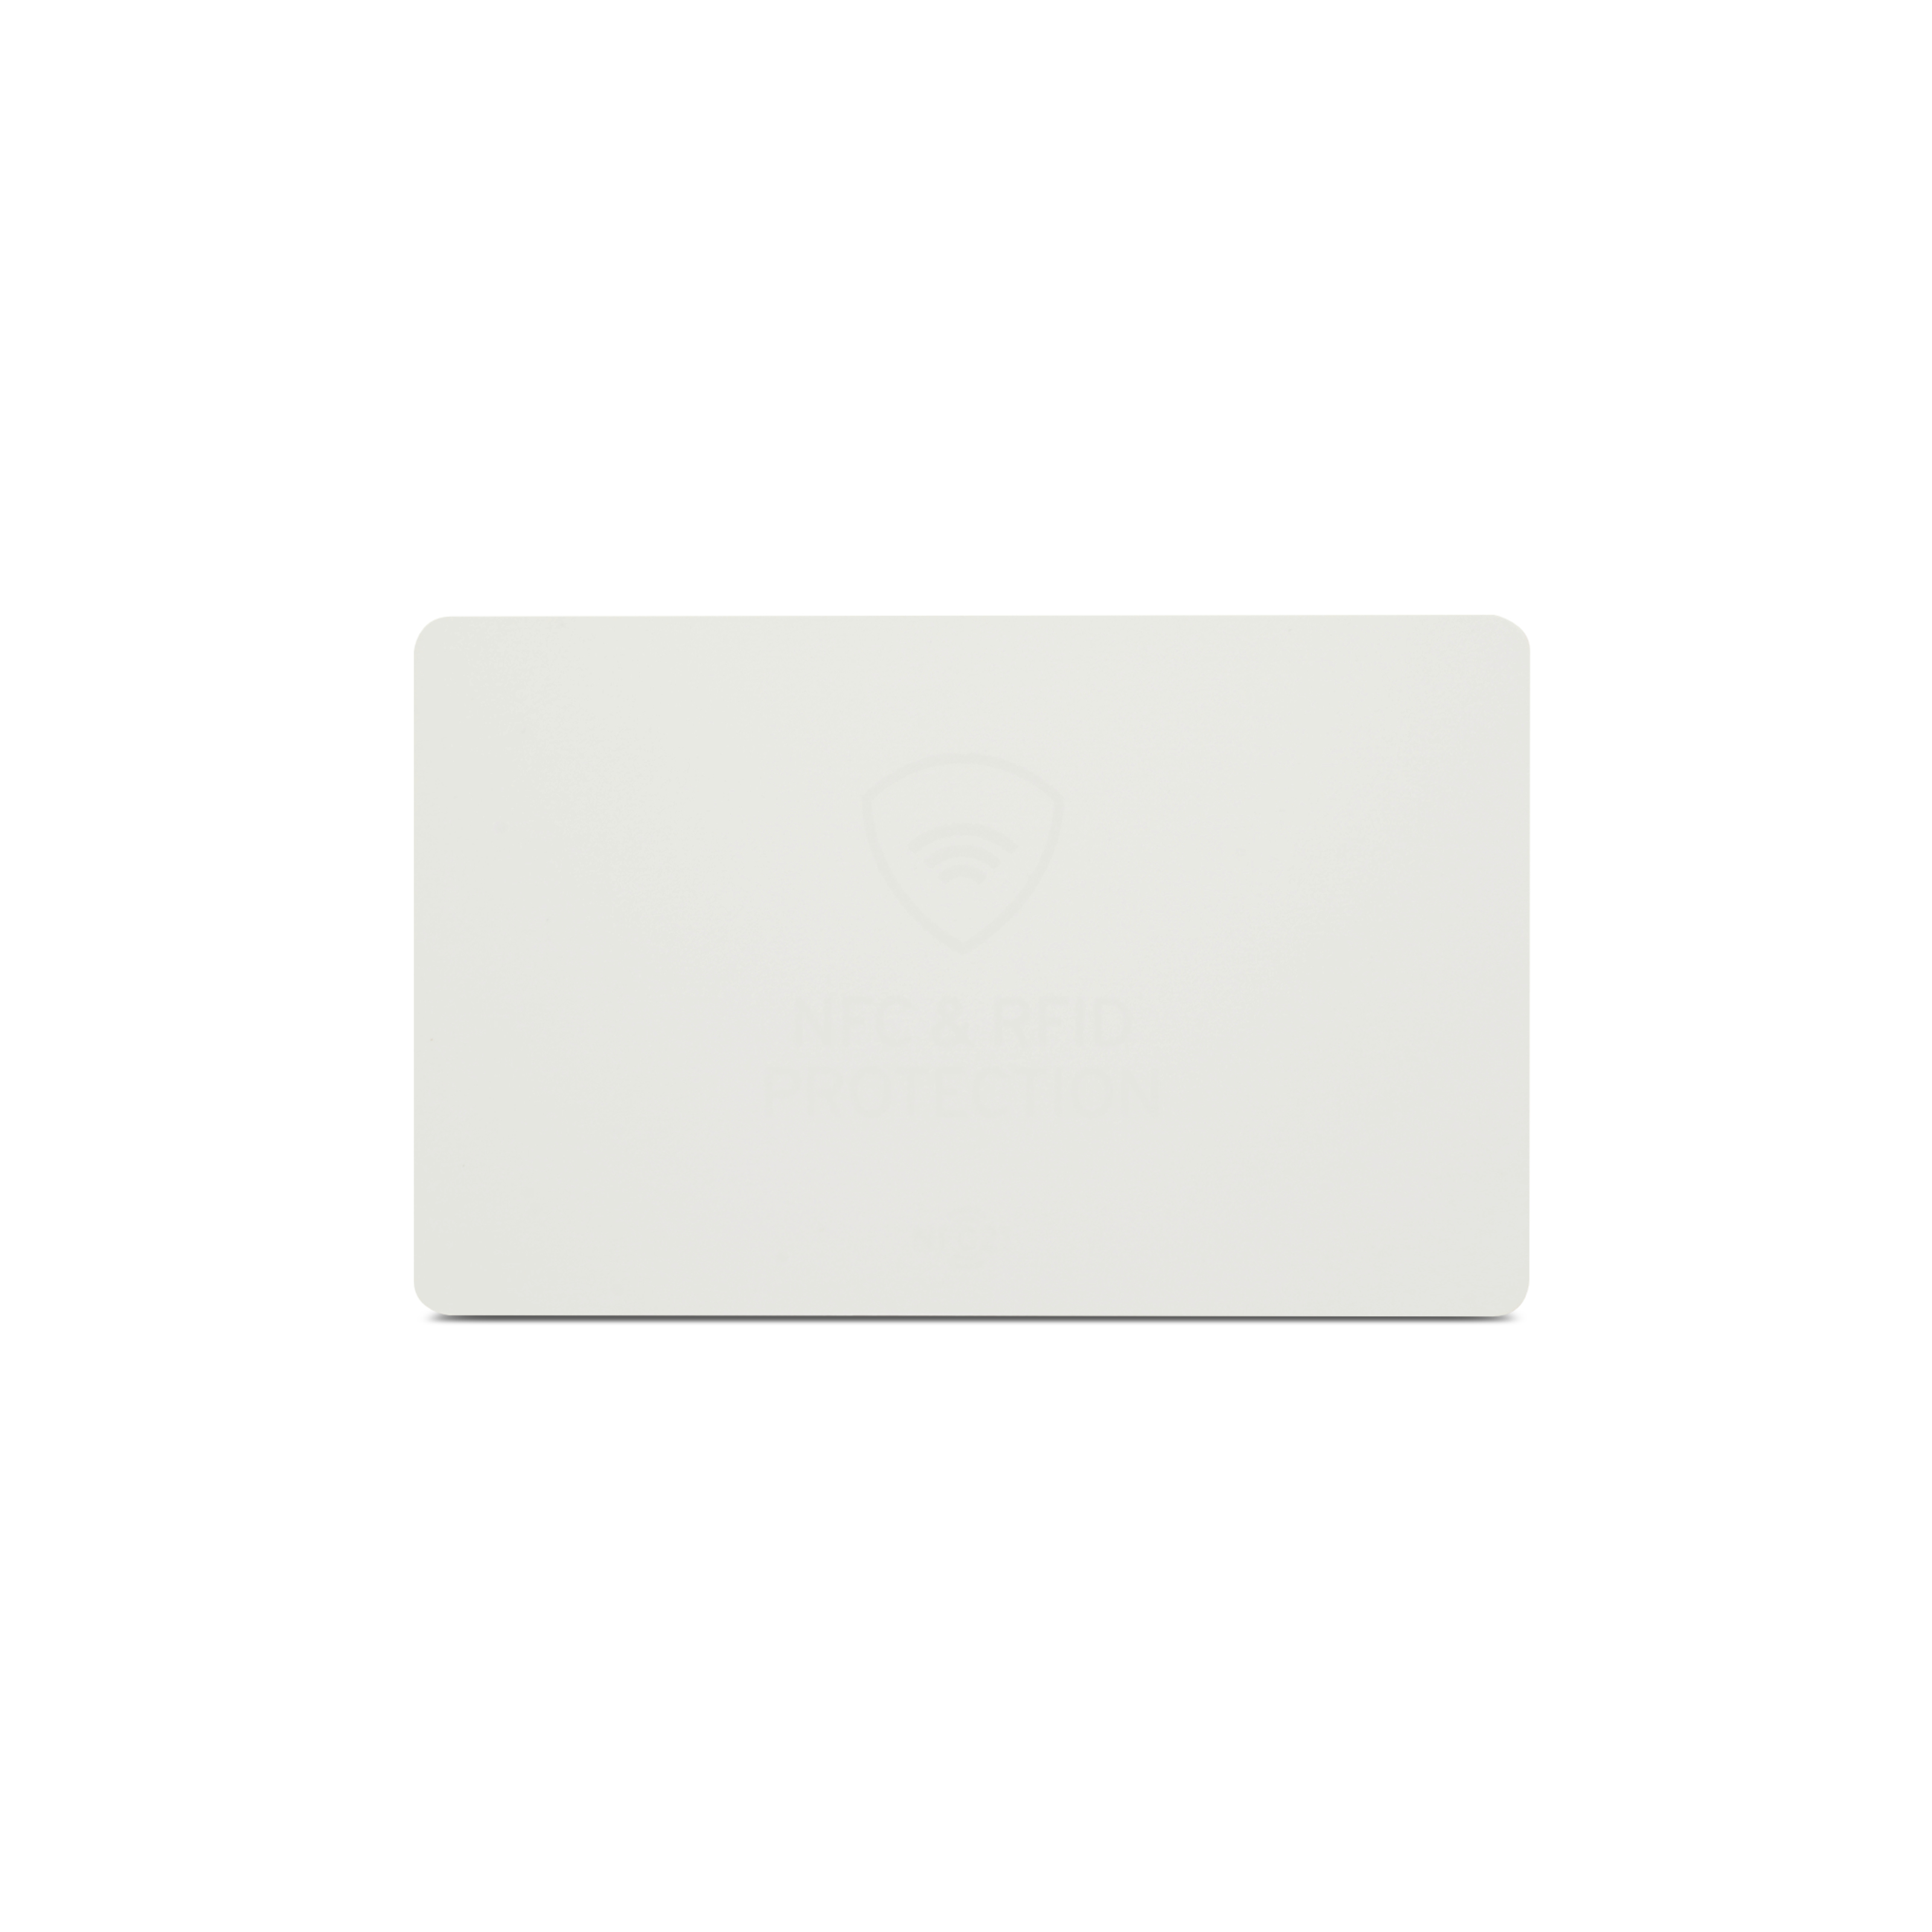 Vorderseite NFC Schutzkarte in weiß im ISO-Format